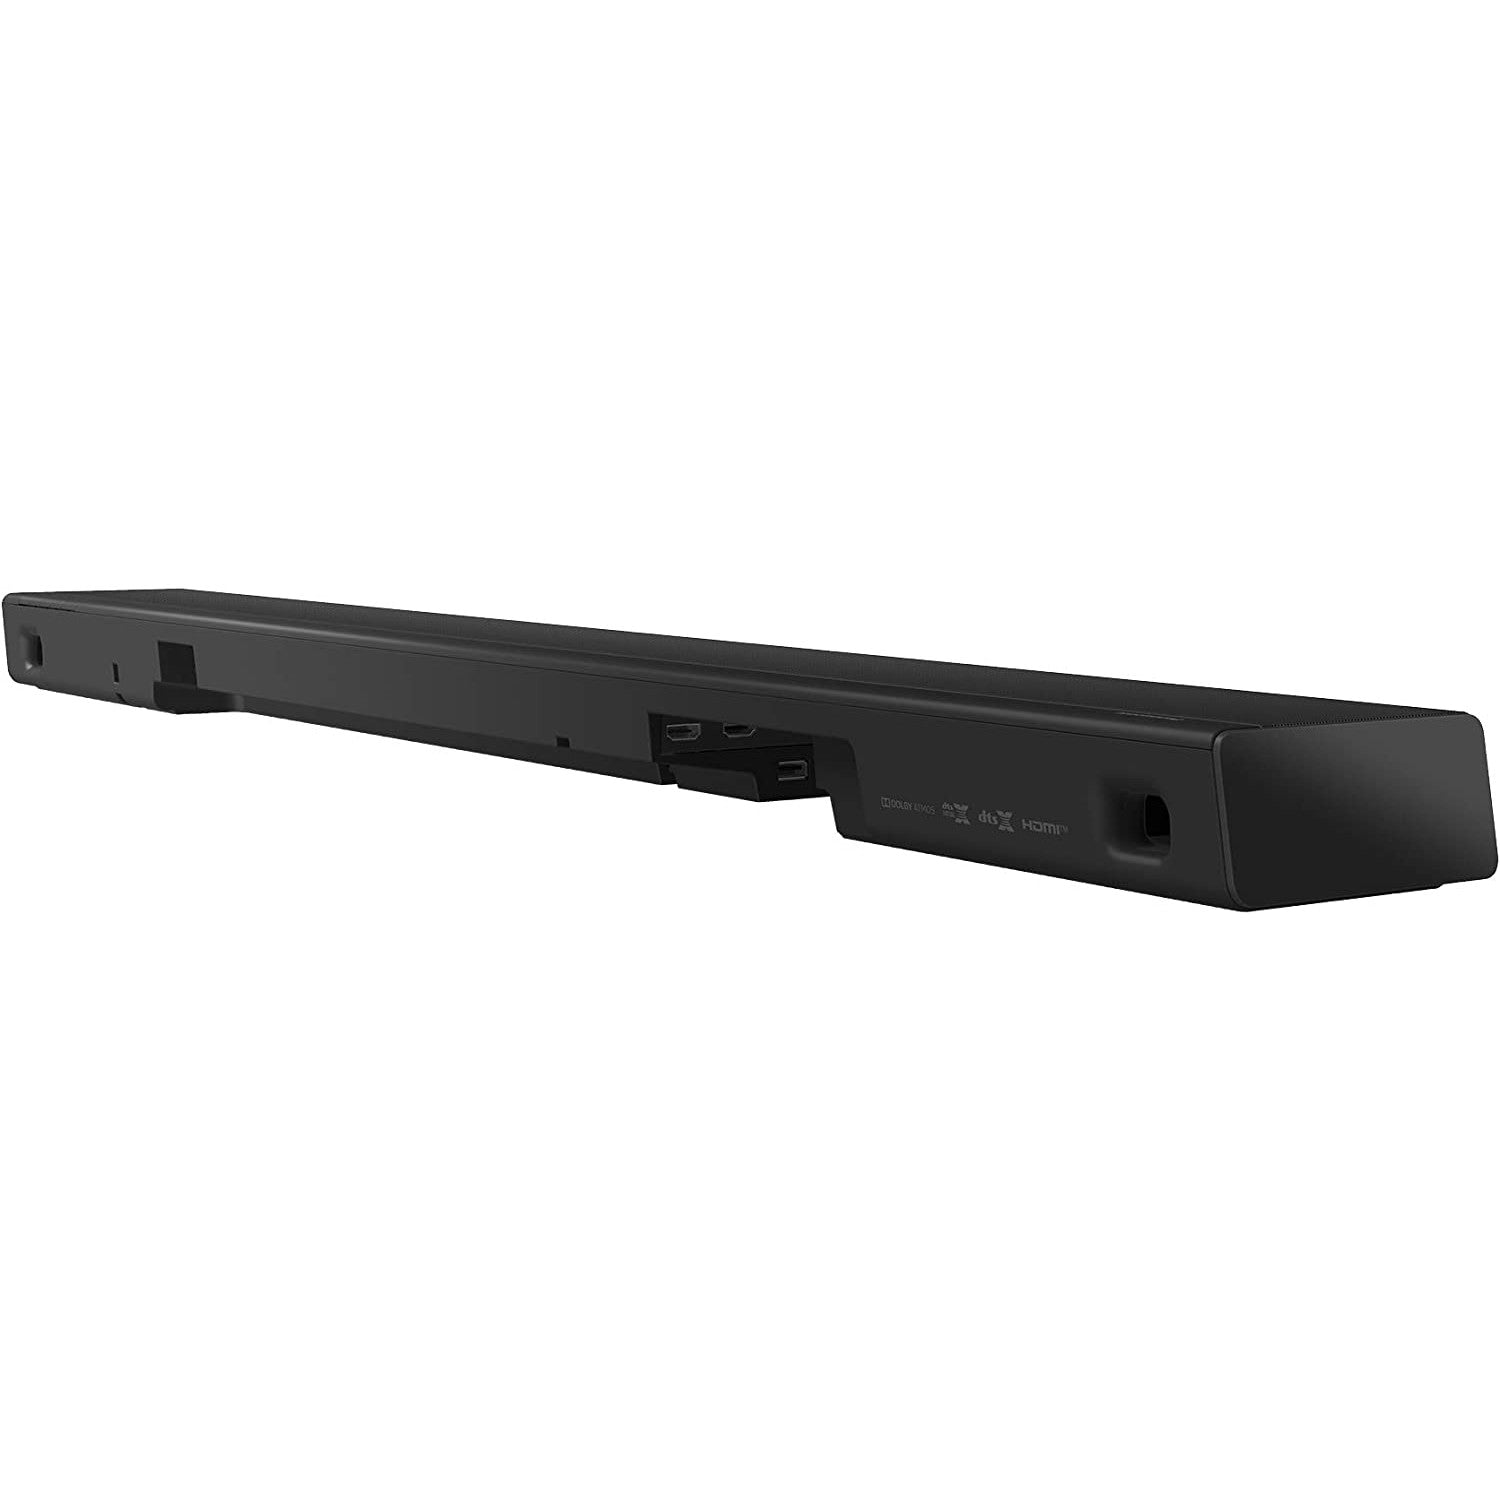 Panasonic SC-HTB600 Soundbar with Speaker - Black - Refurbished Pristine